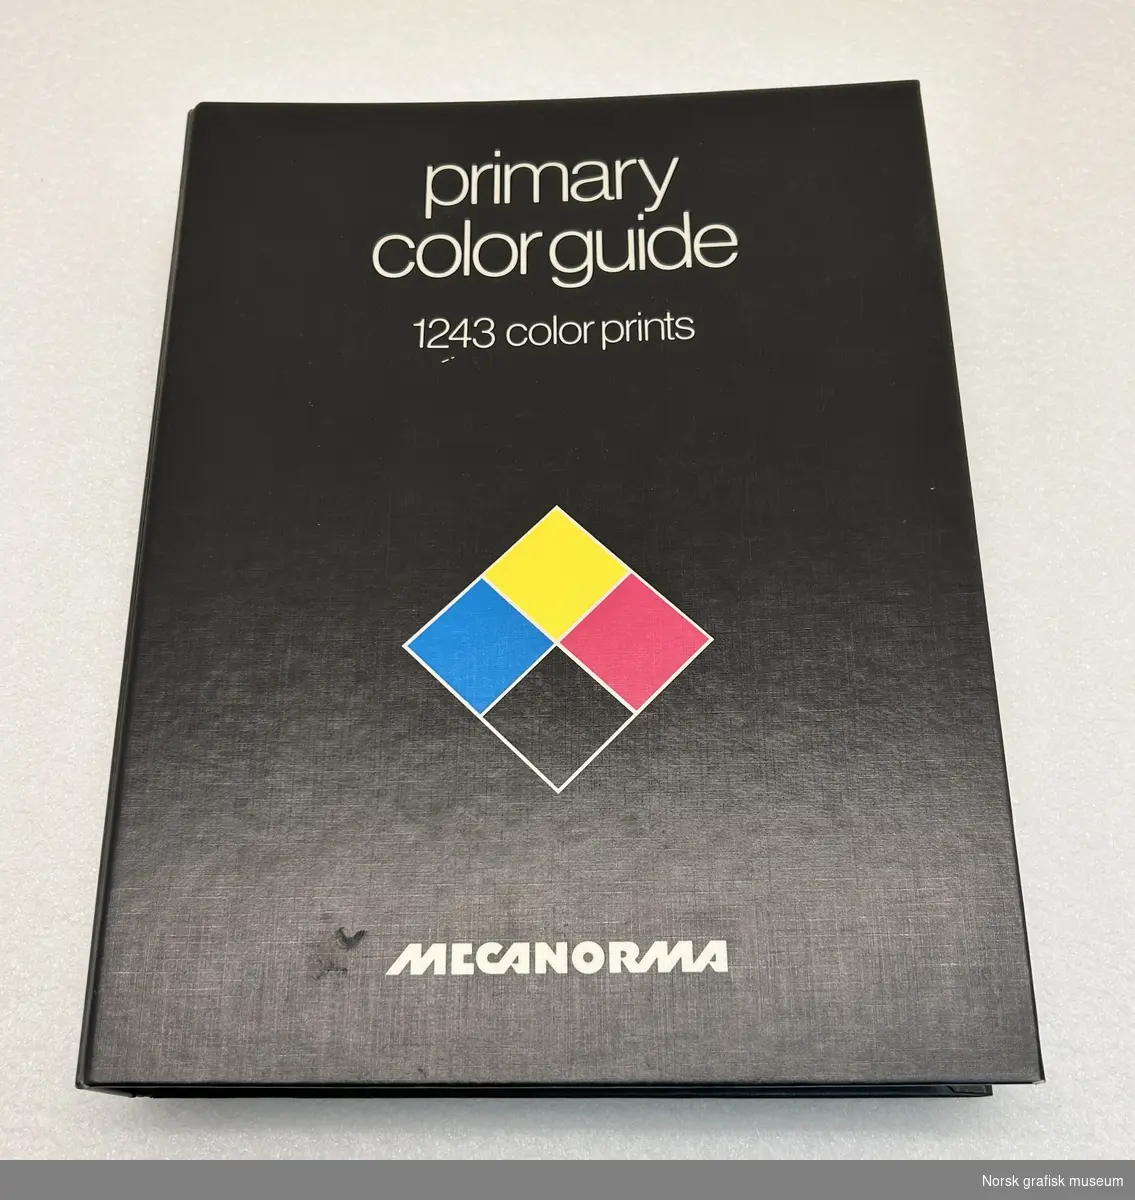 Primay color guide
1243 color prints

Utgitt av Mecanorma.